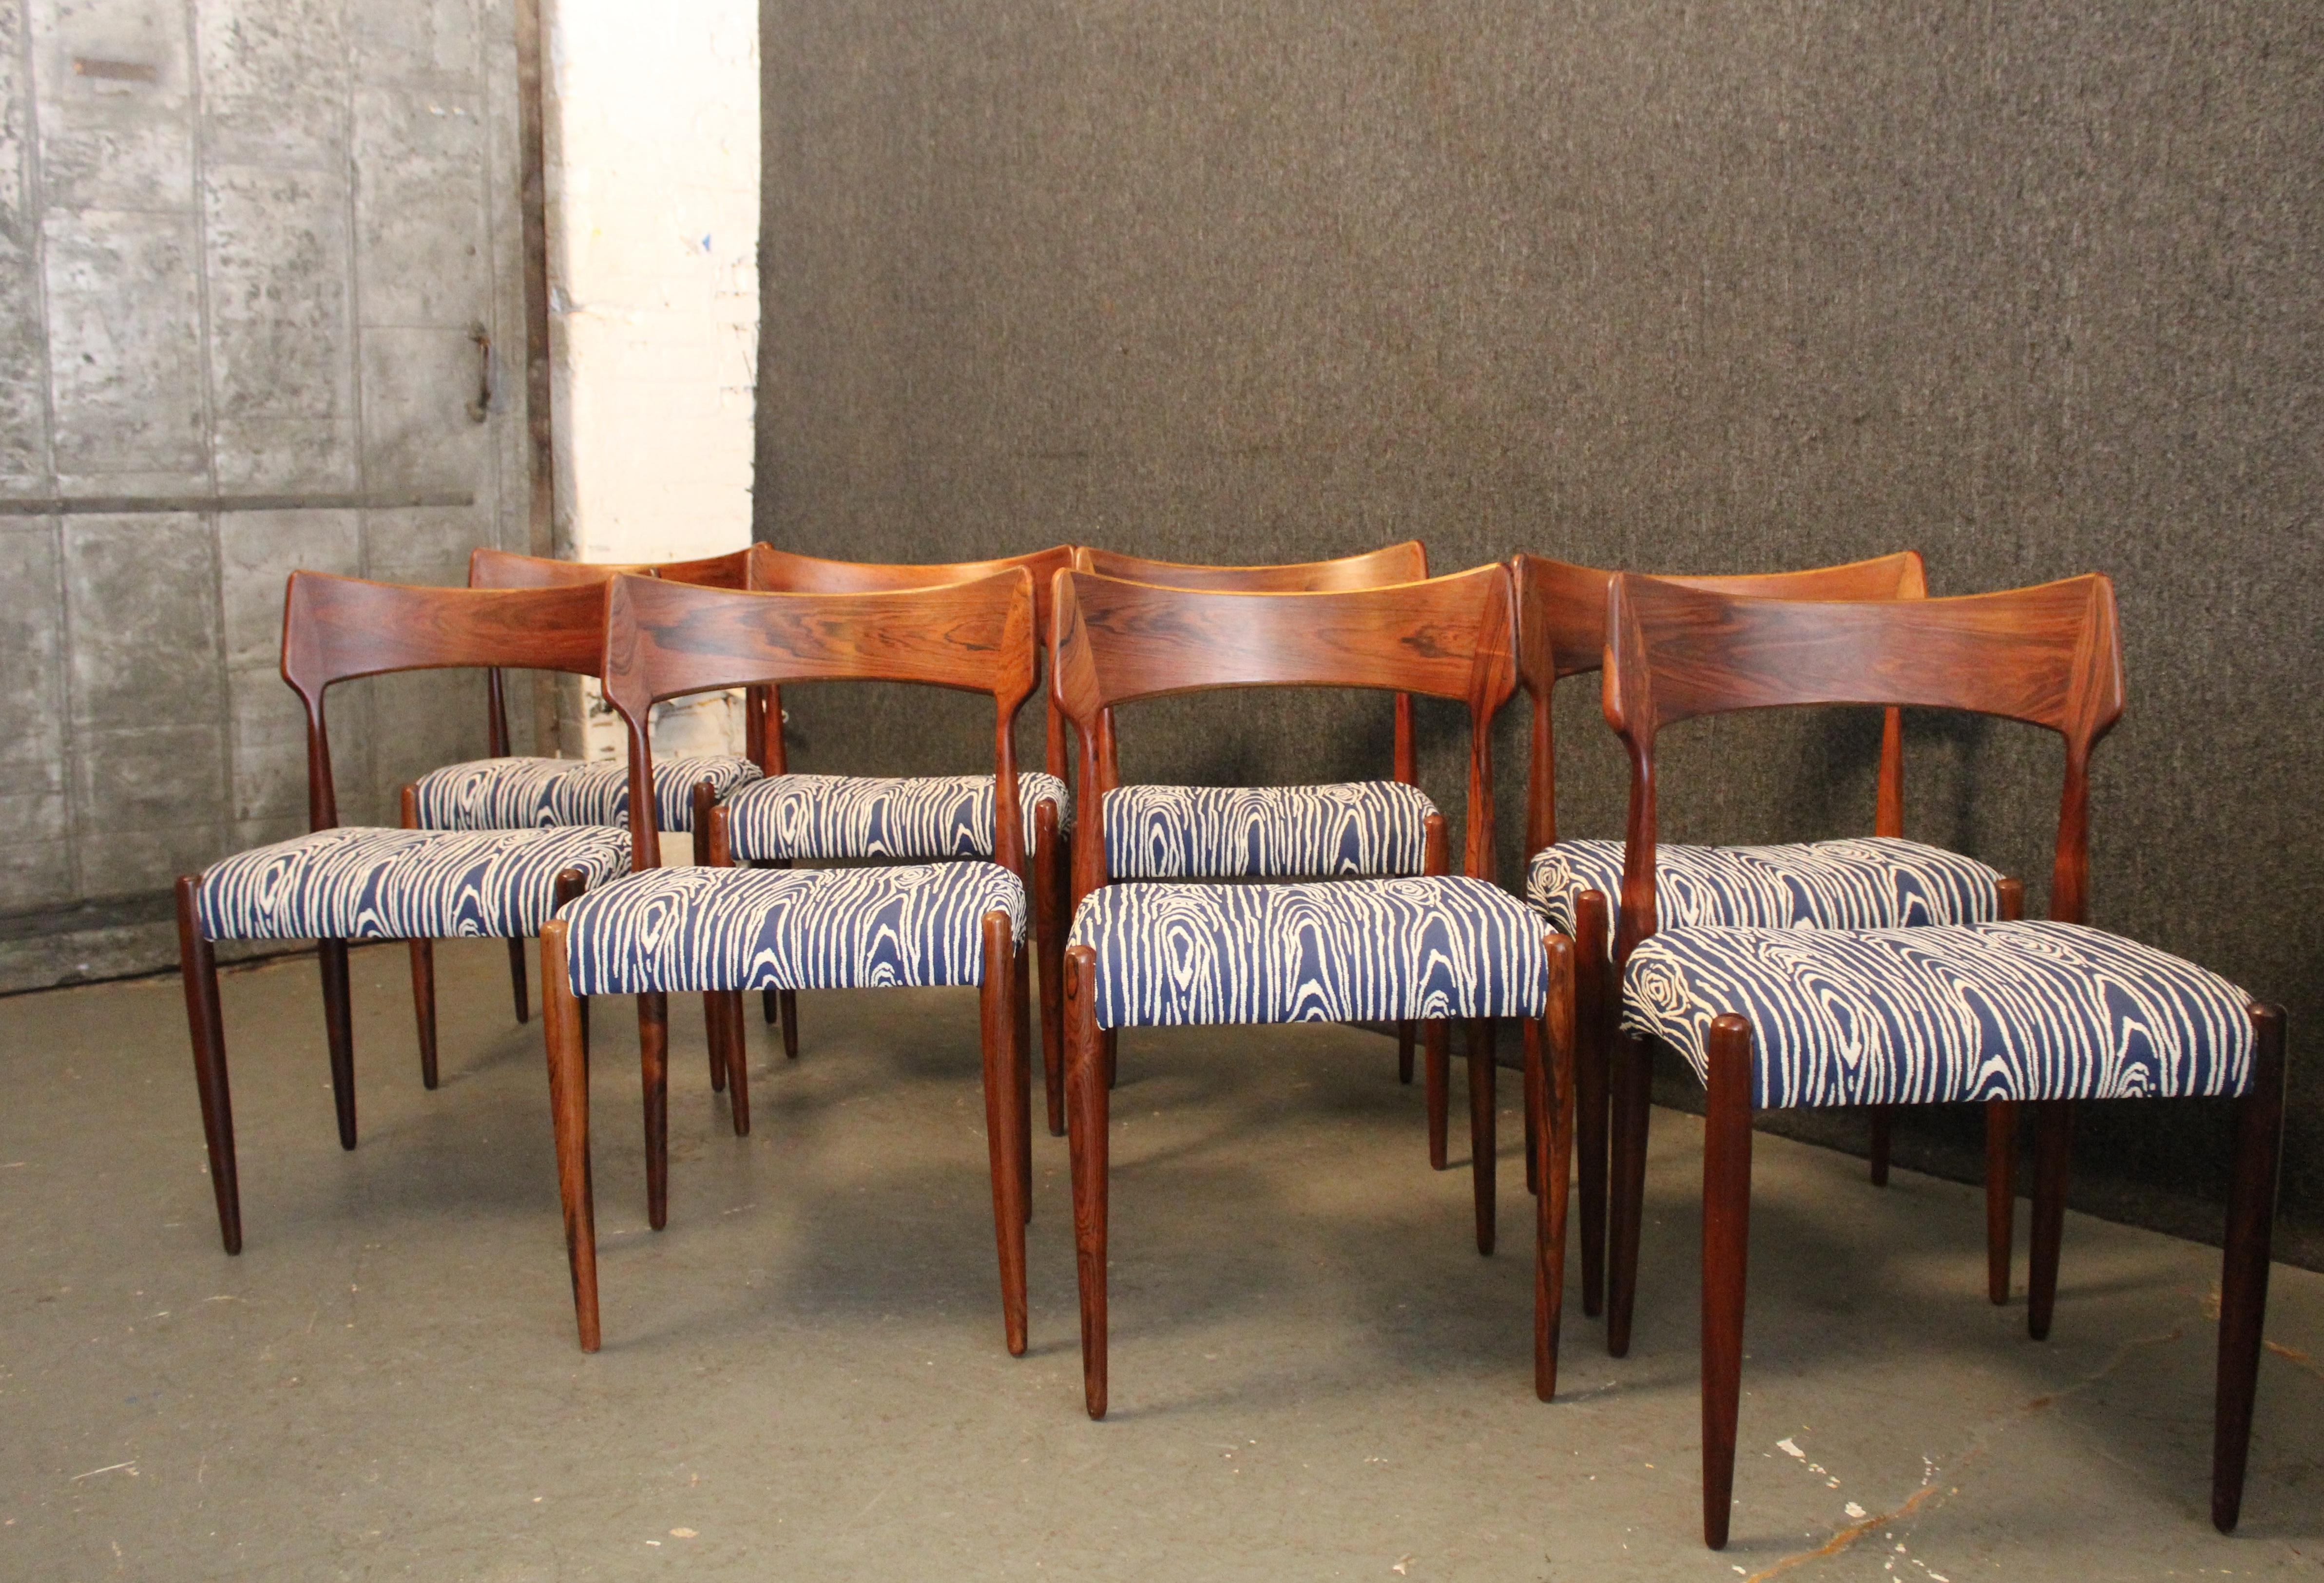 Diese exquisiten Palisander-Esszimmerstühle der dänischen Möbelmanufaktur Bernhard Pedersen & Son stehen für den Geist der organischen Moderne. Mit einer wunderschön geschnitzten, gewölbten Rückenlehne aus Palisanderholz, die über gedrechselten,